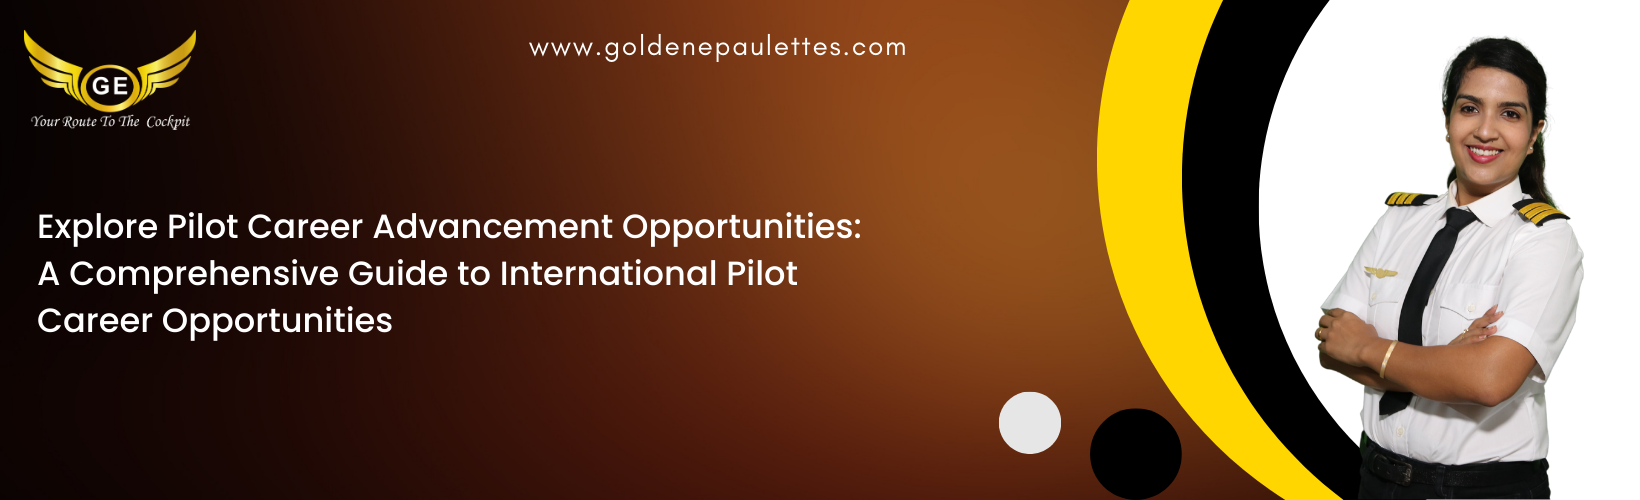 Pilot Career Advancement Opportunities